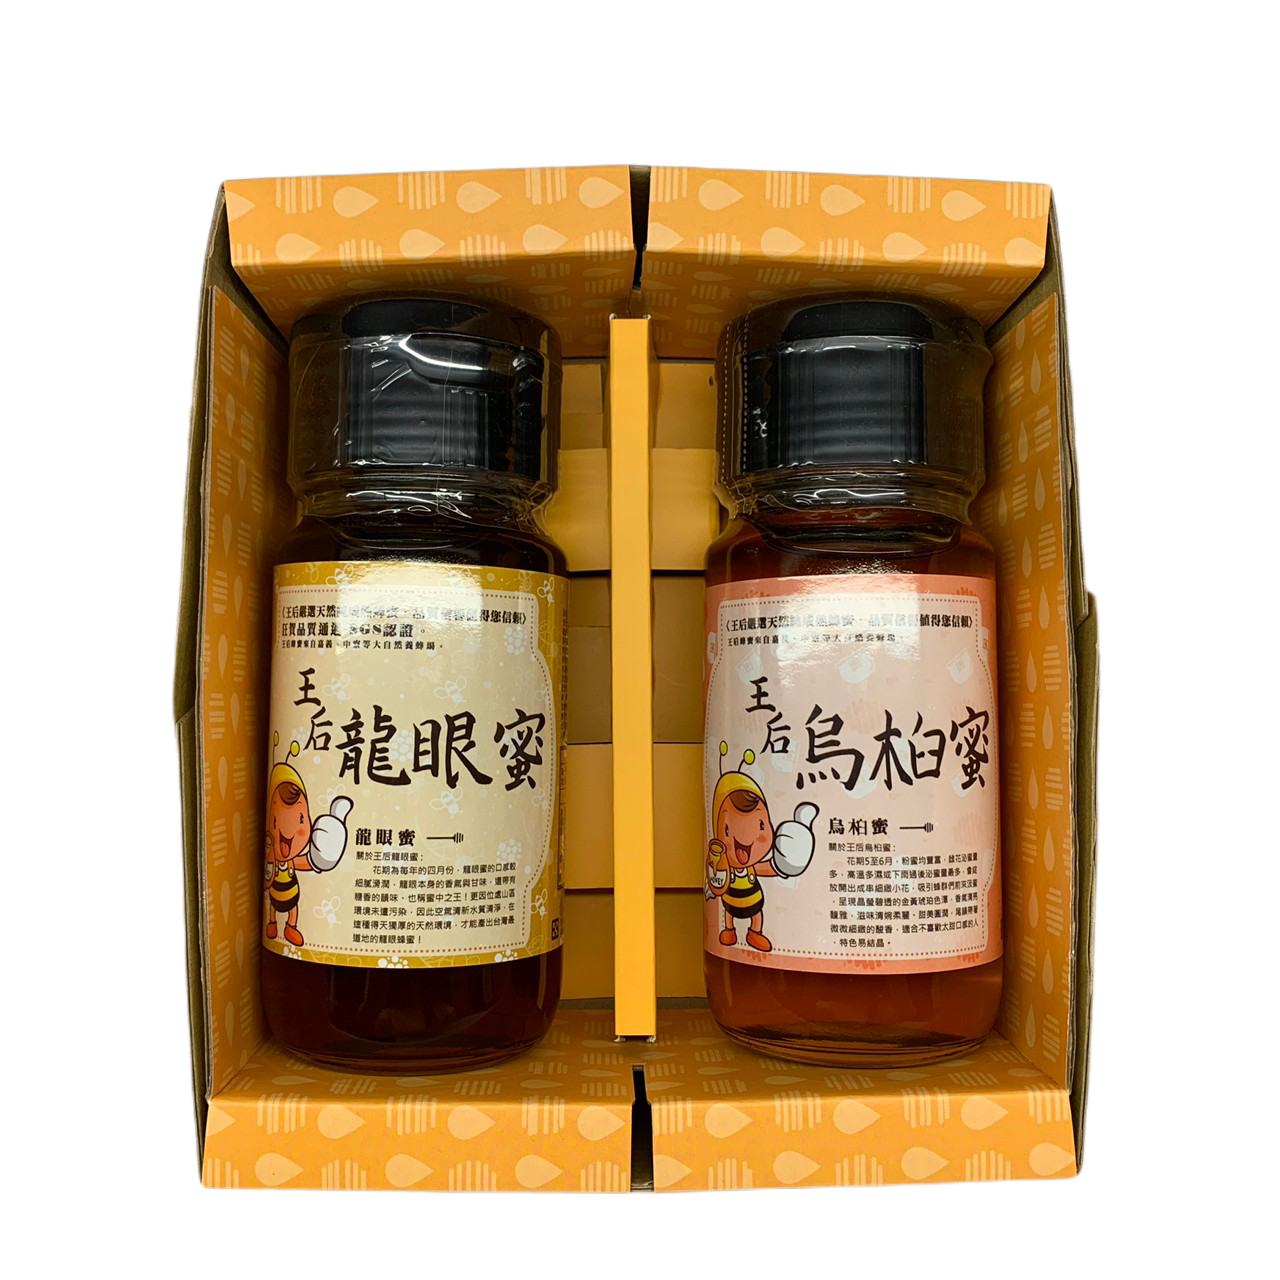 【蜂巢禮盒系列】C：700ml 龍眼蜜、烏桕蜜、荔枝蜜 (三種口味擇兩瓶)